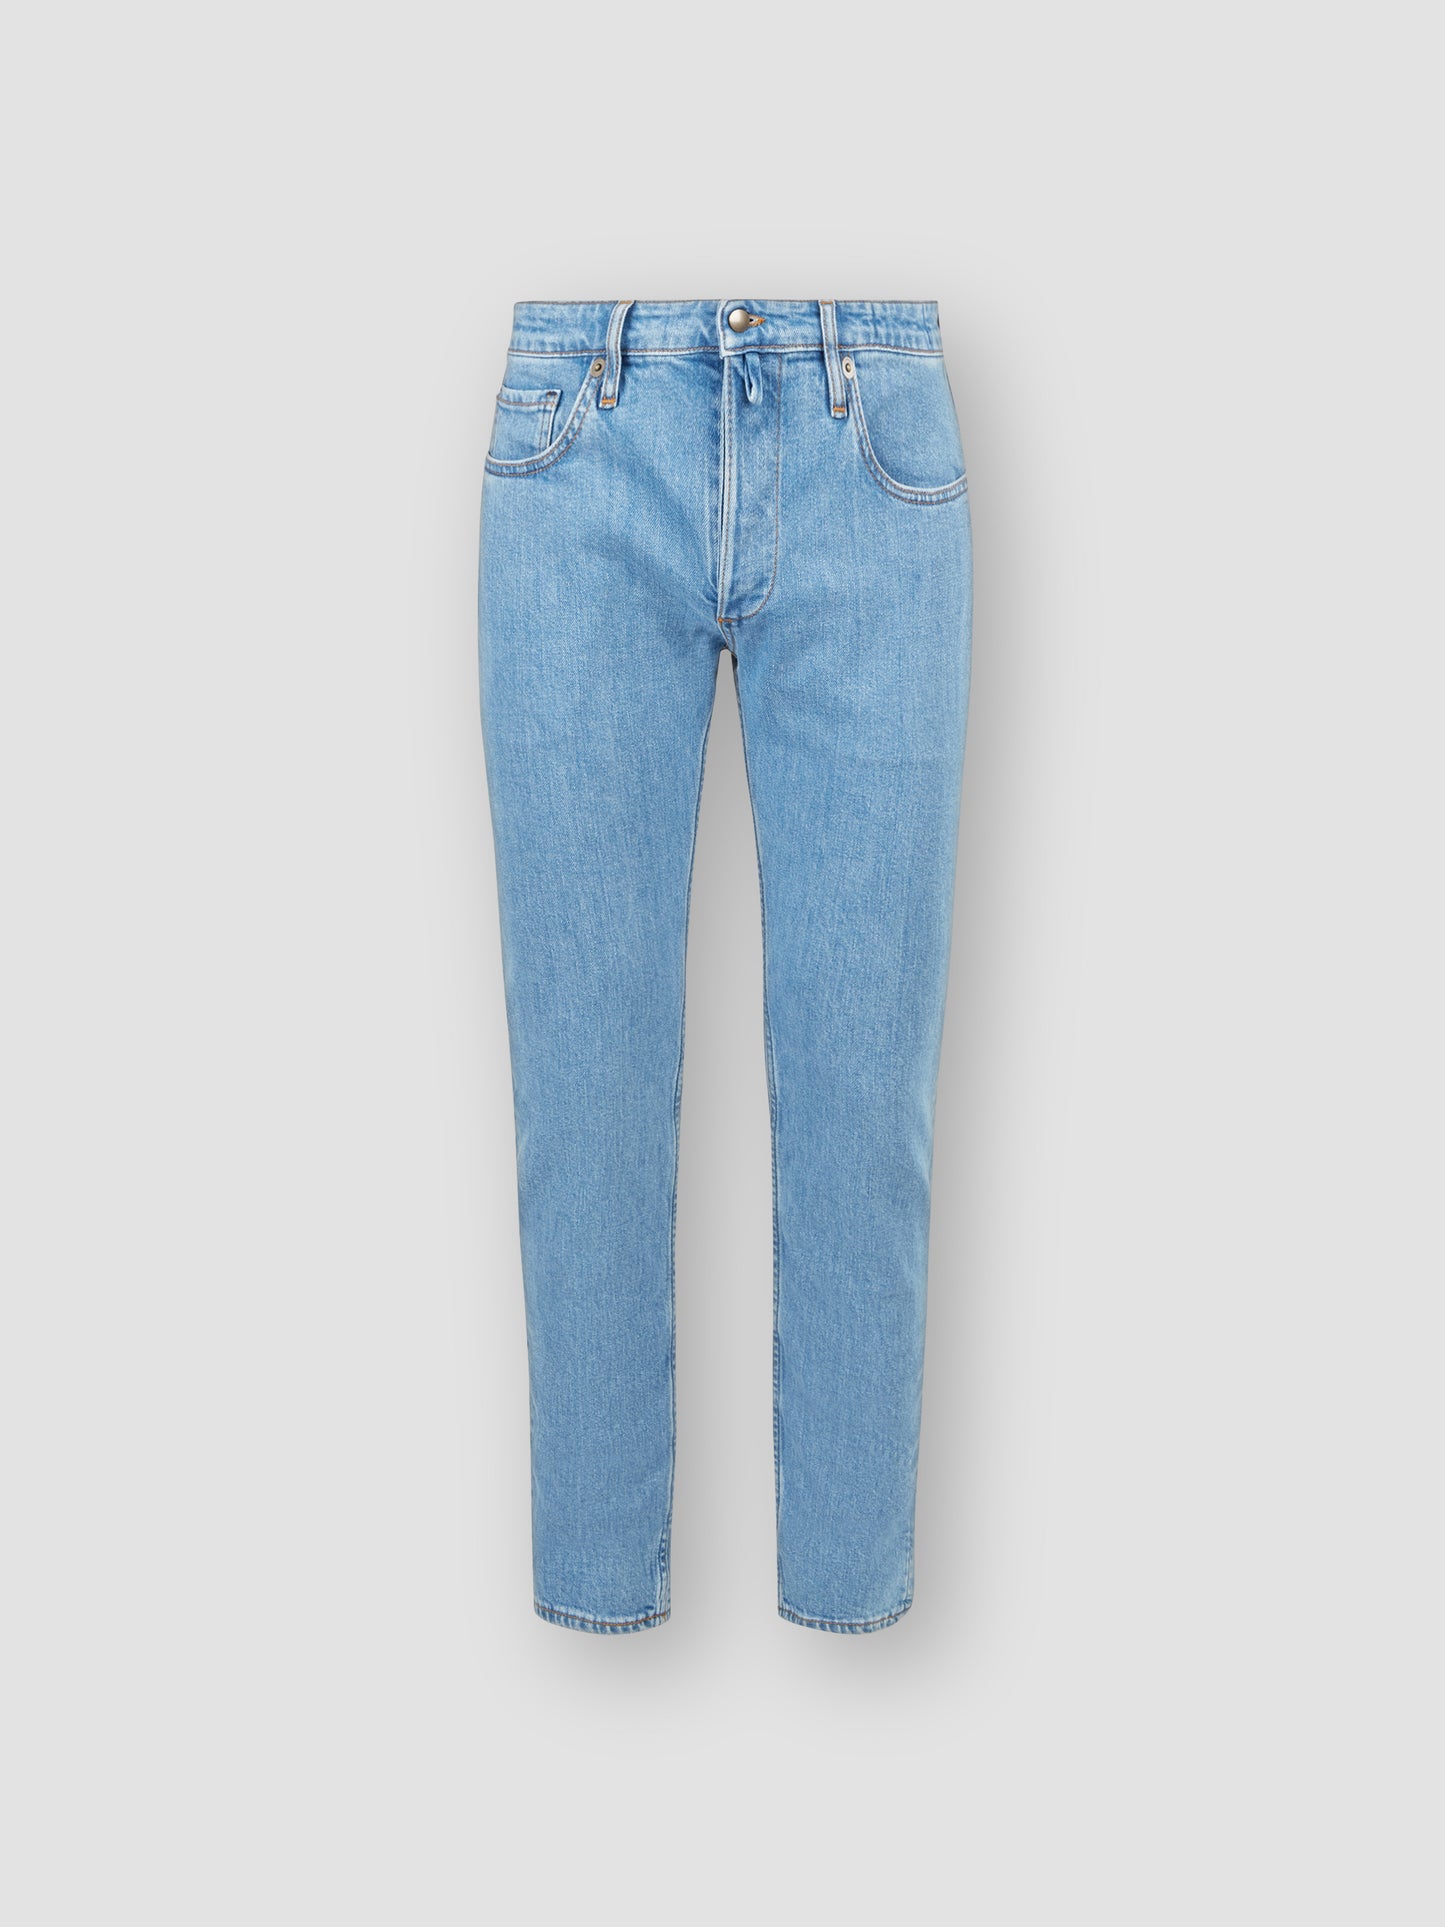 Five Pocket Denim Jeans Light Blue Product Front